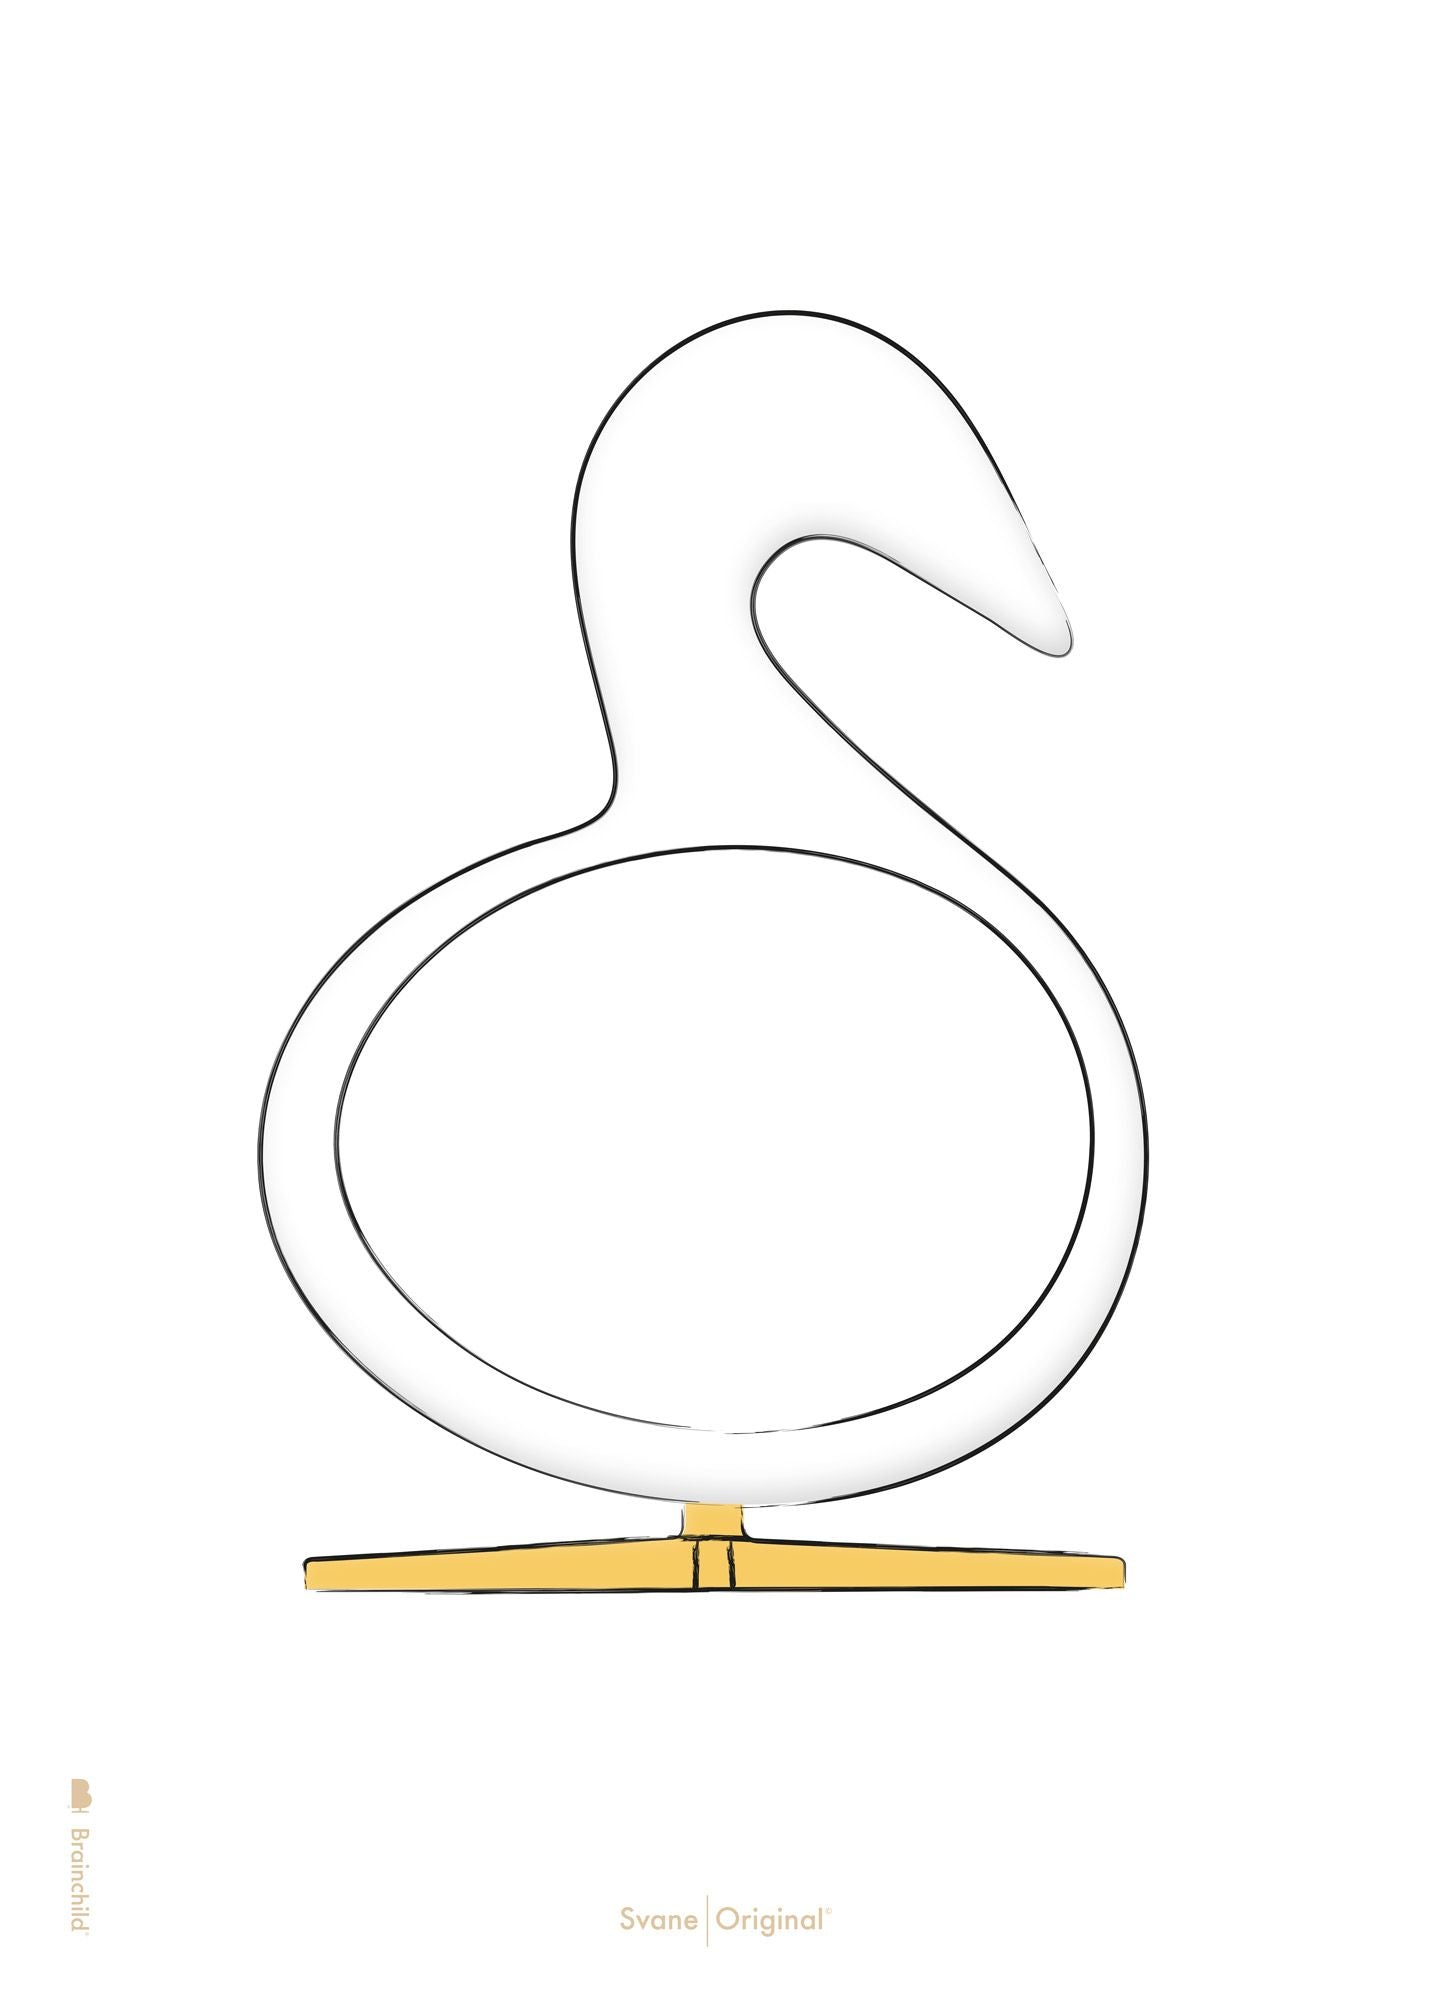 Brainchild Swan Design Sketch Plakat uden ramme 30x40 cm, hvid baggrund